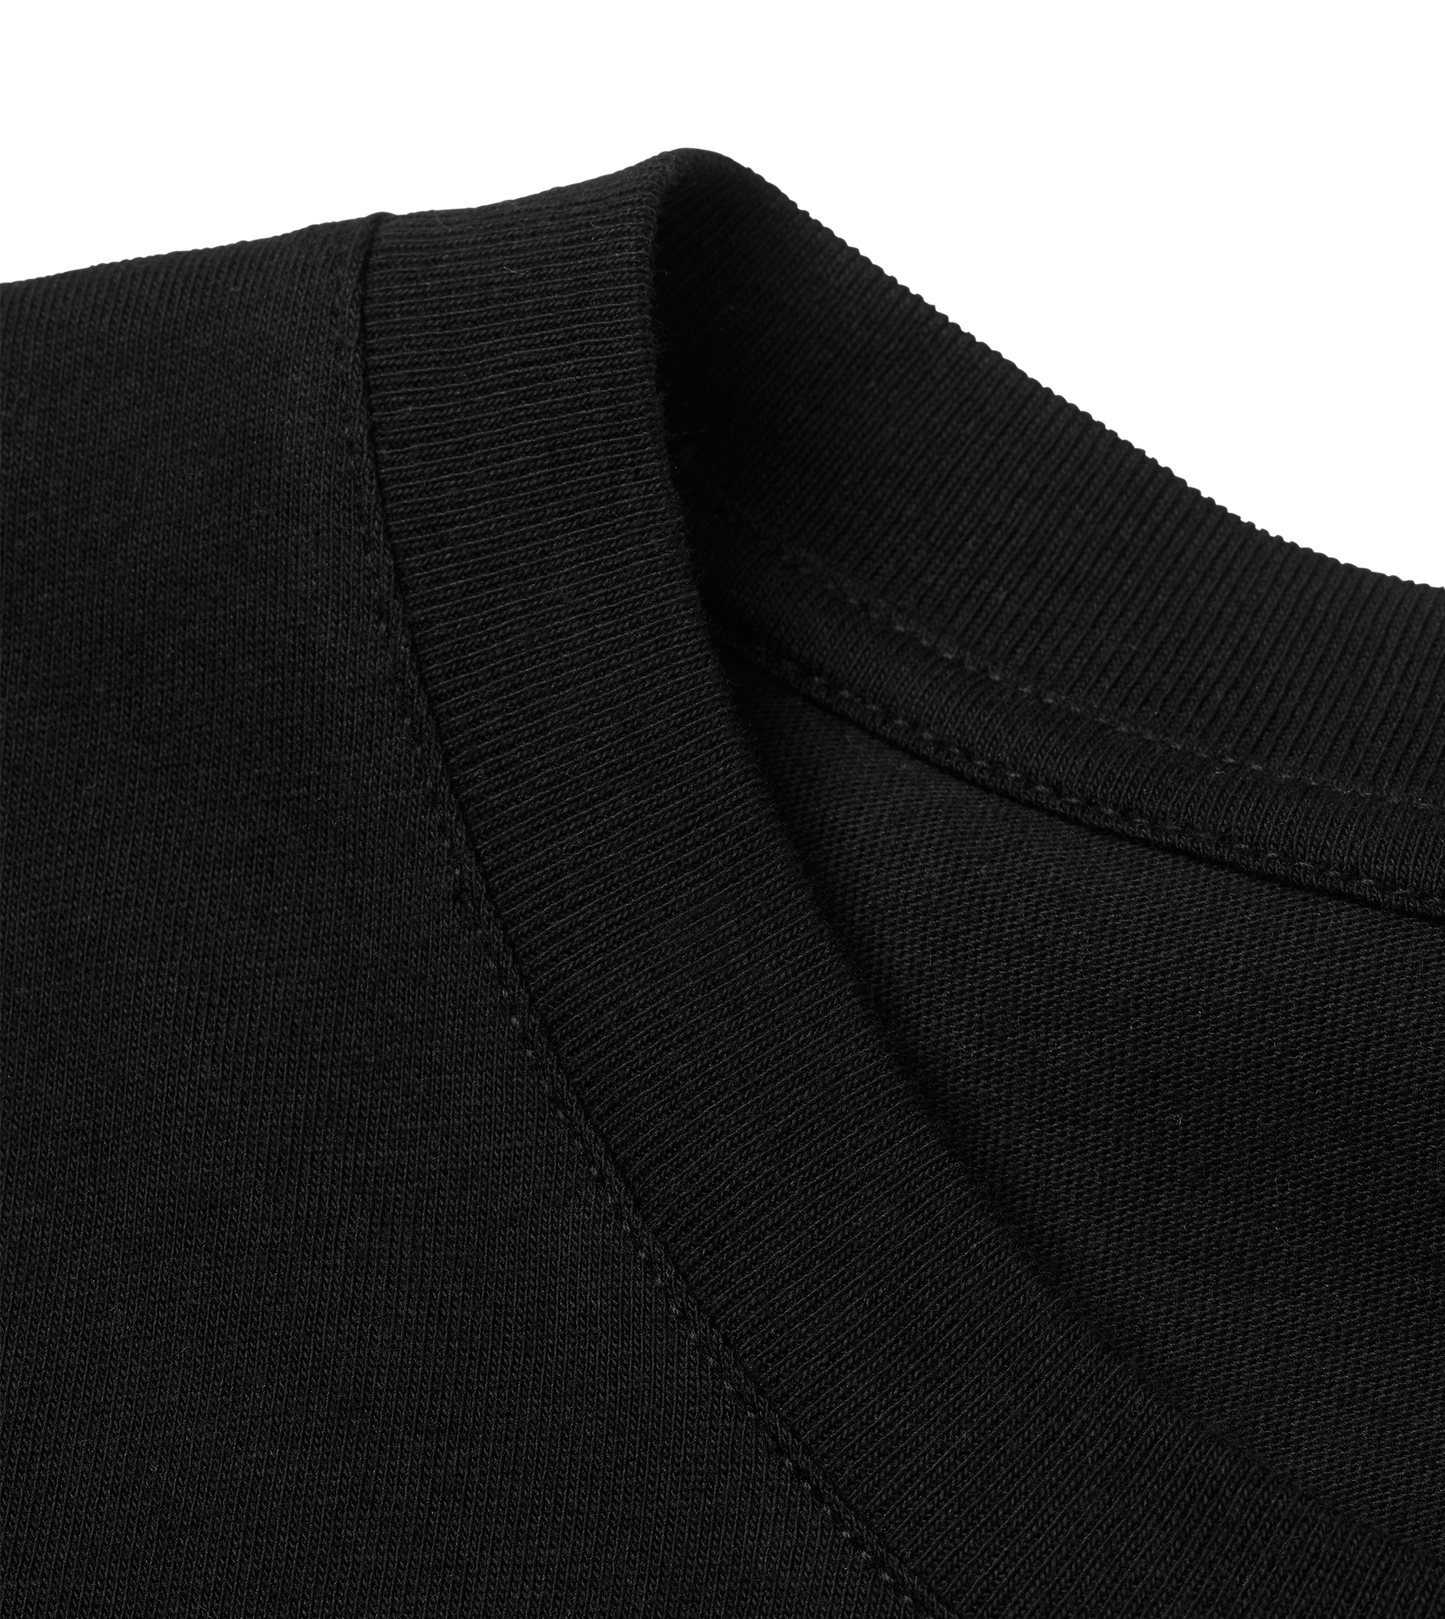 VibeKitchen T-Shirt - Black - Premium